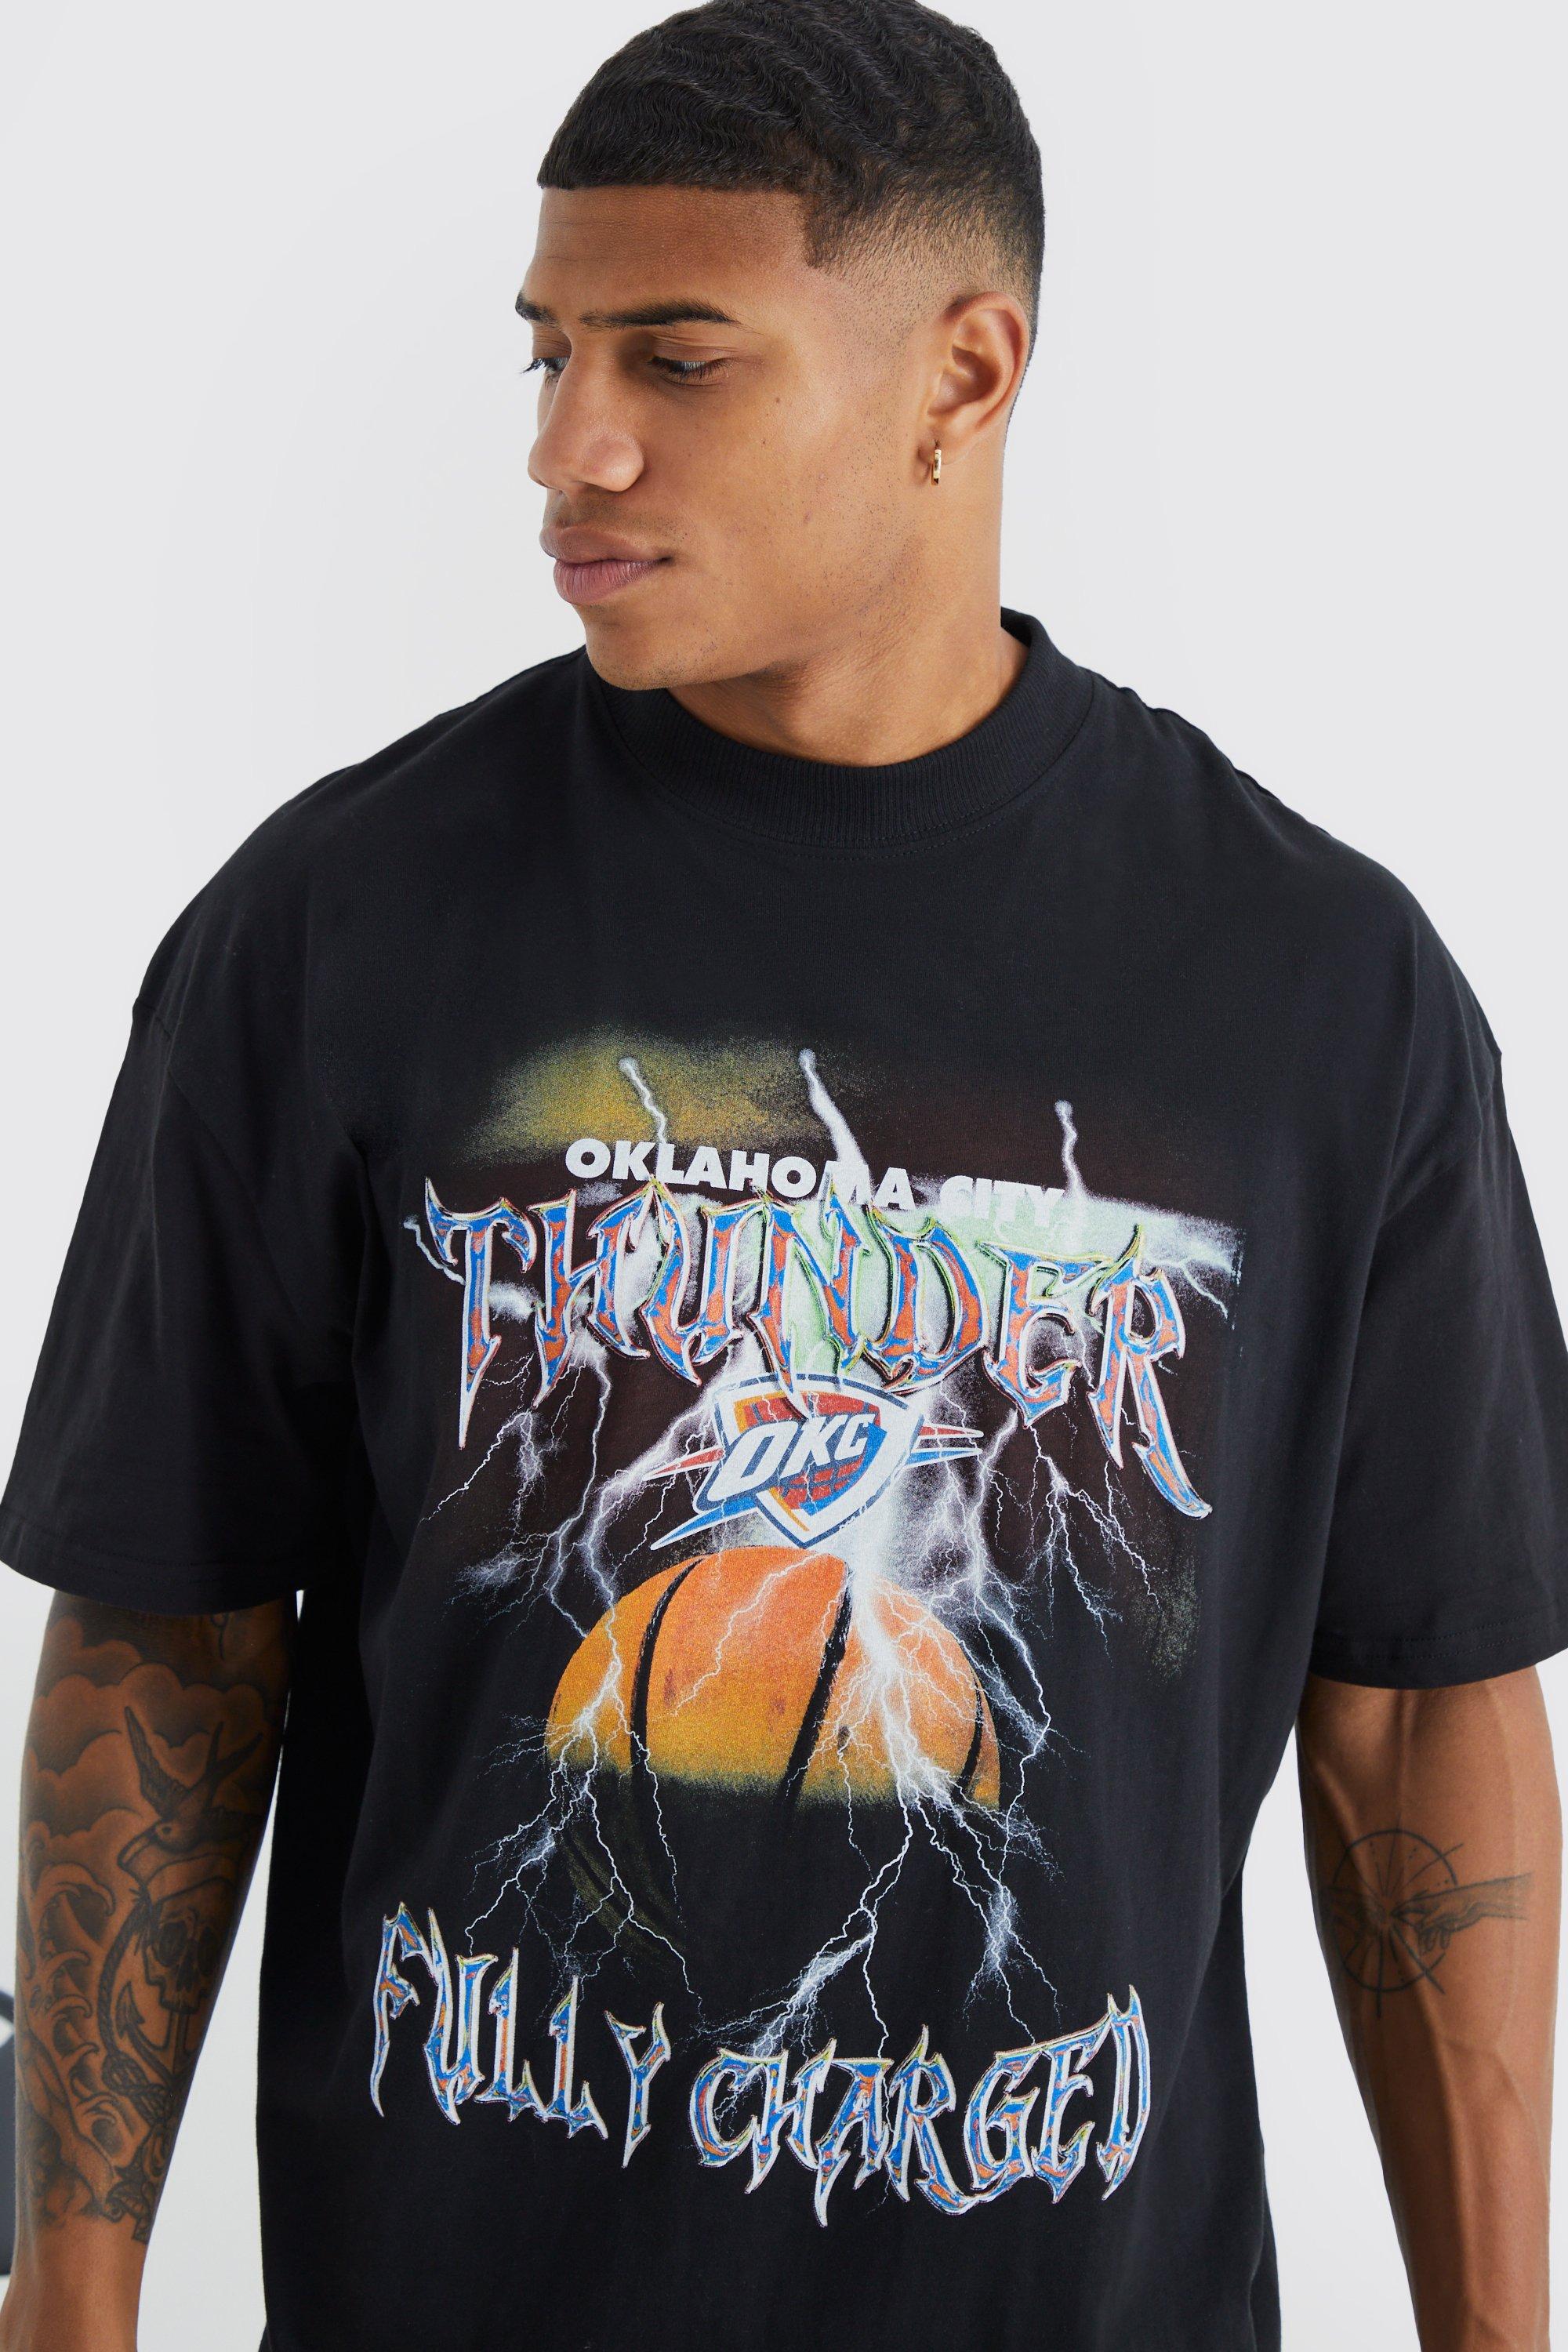 OKC Thunder NBA Polo Shirt, Men's Fashion, Tops & Sets, Tshirts